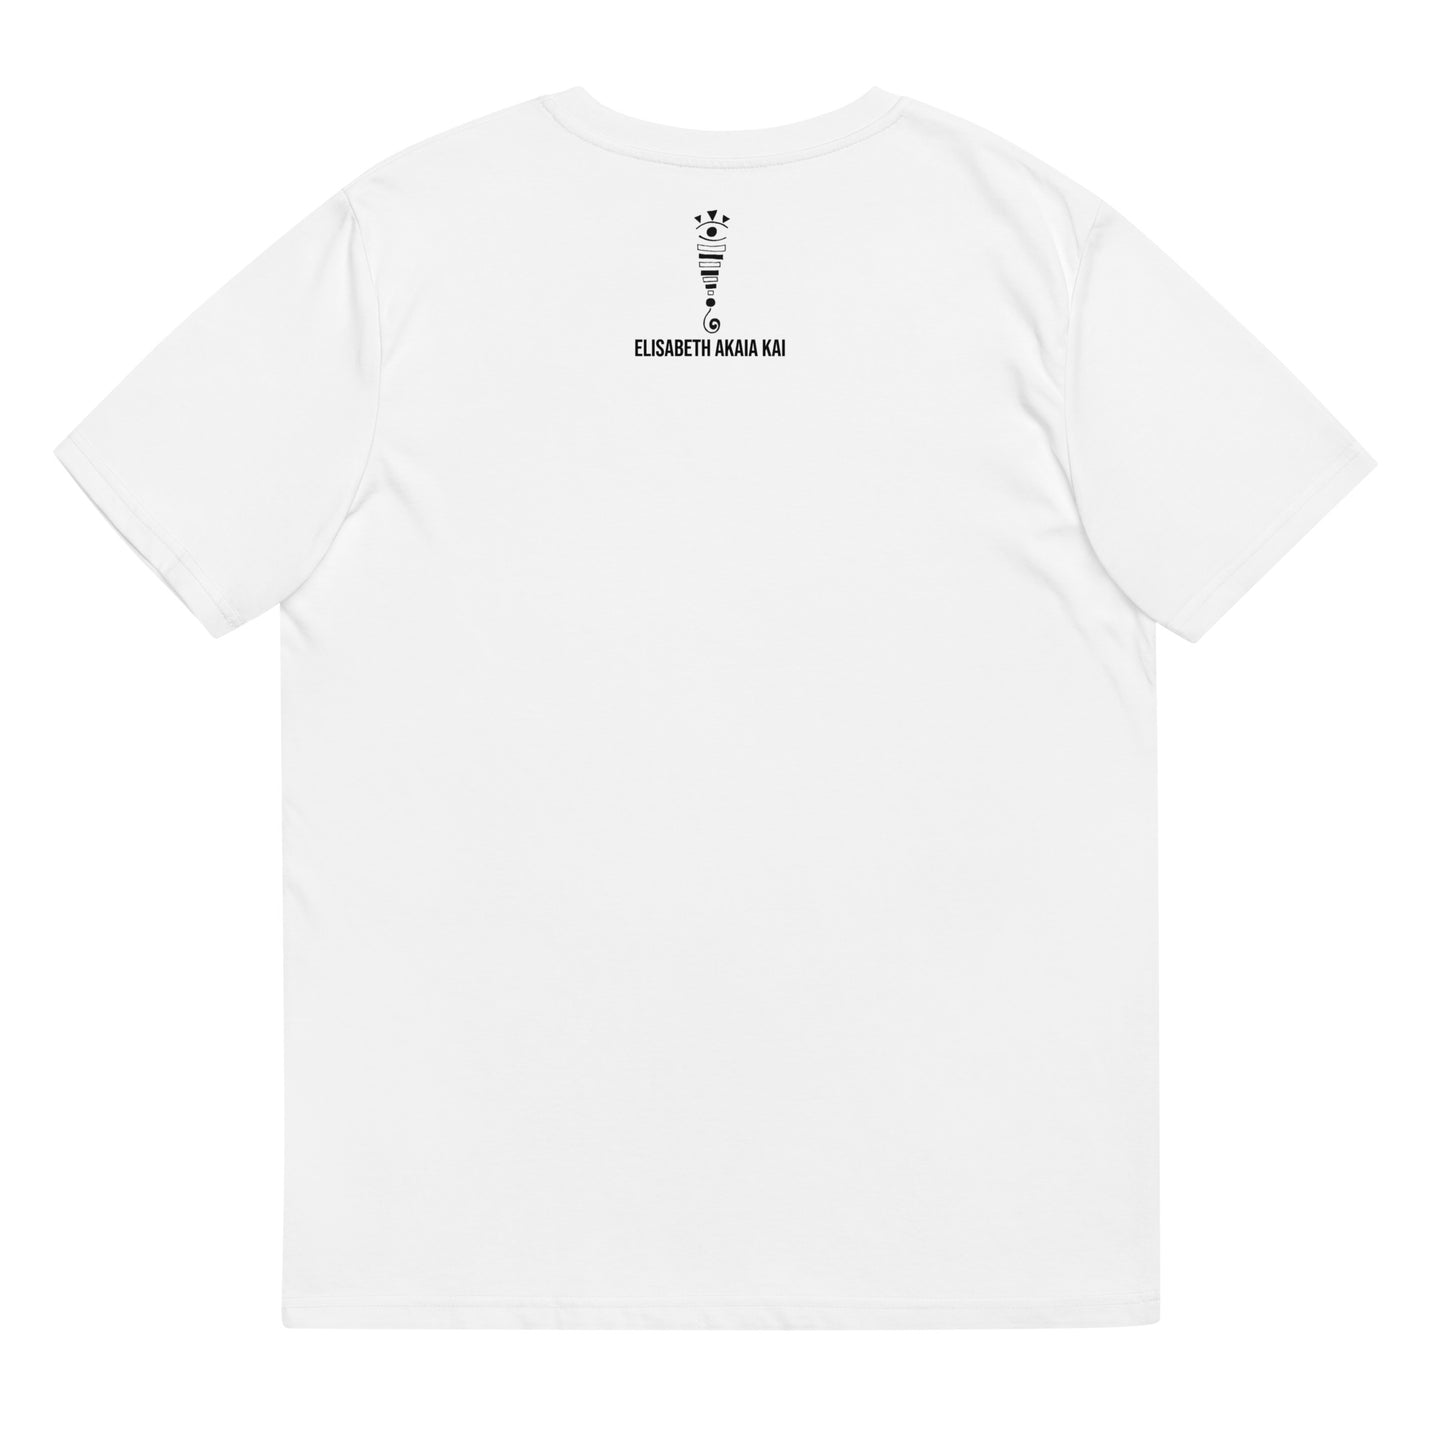 LA MUJER CON LOS TRENES - Camiseta unisex de algodón orgánico